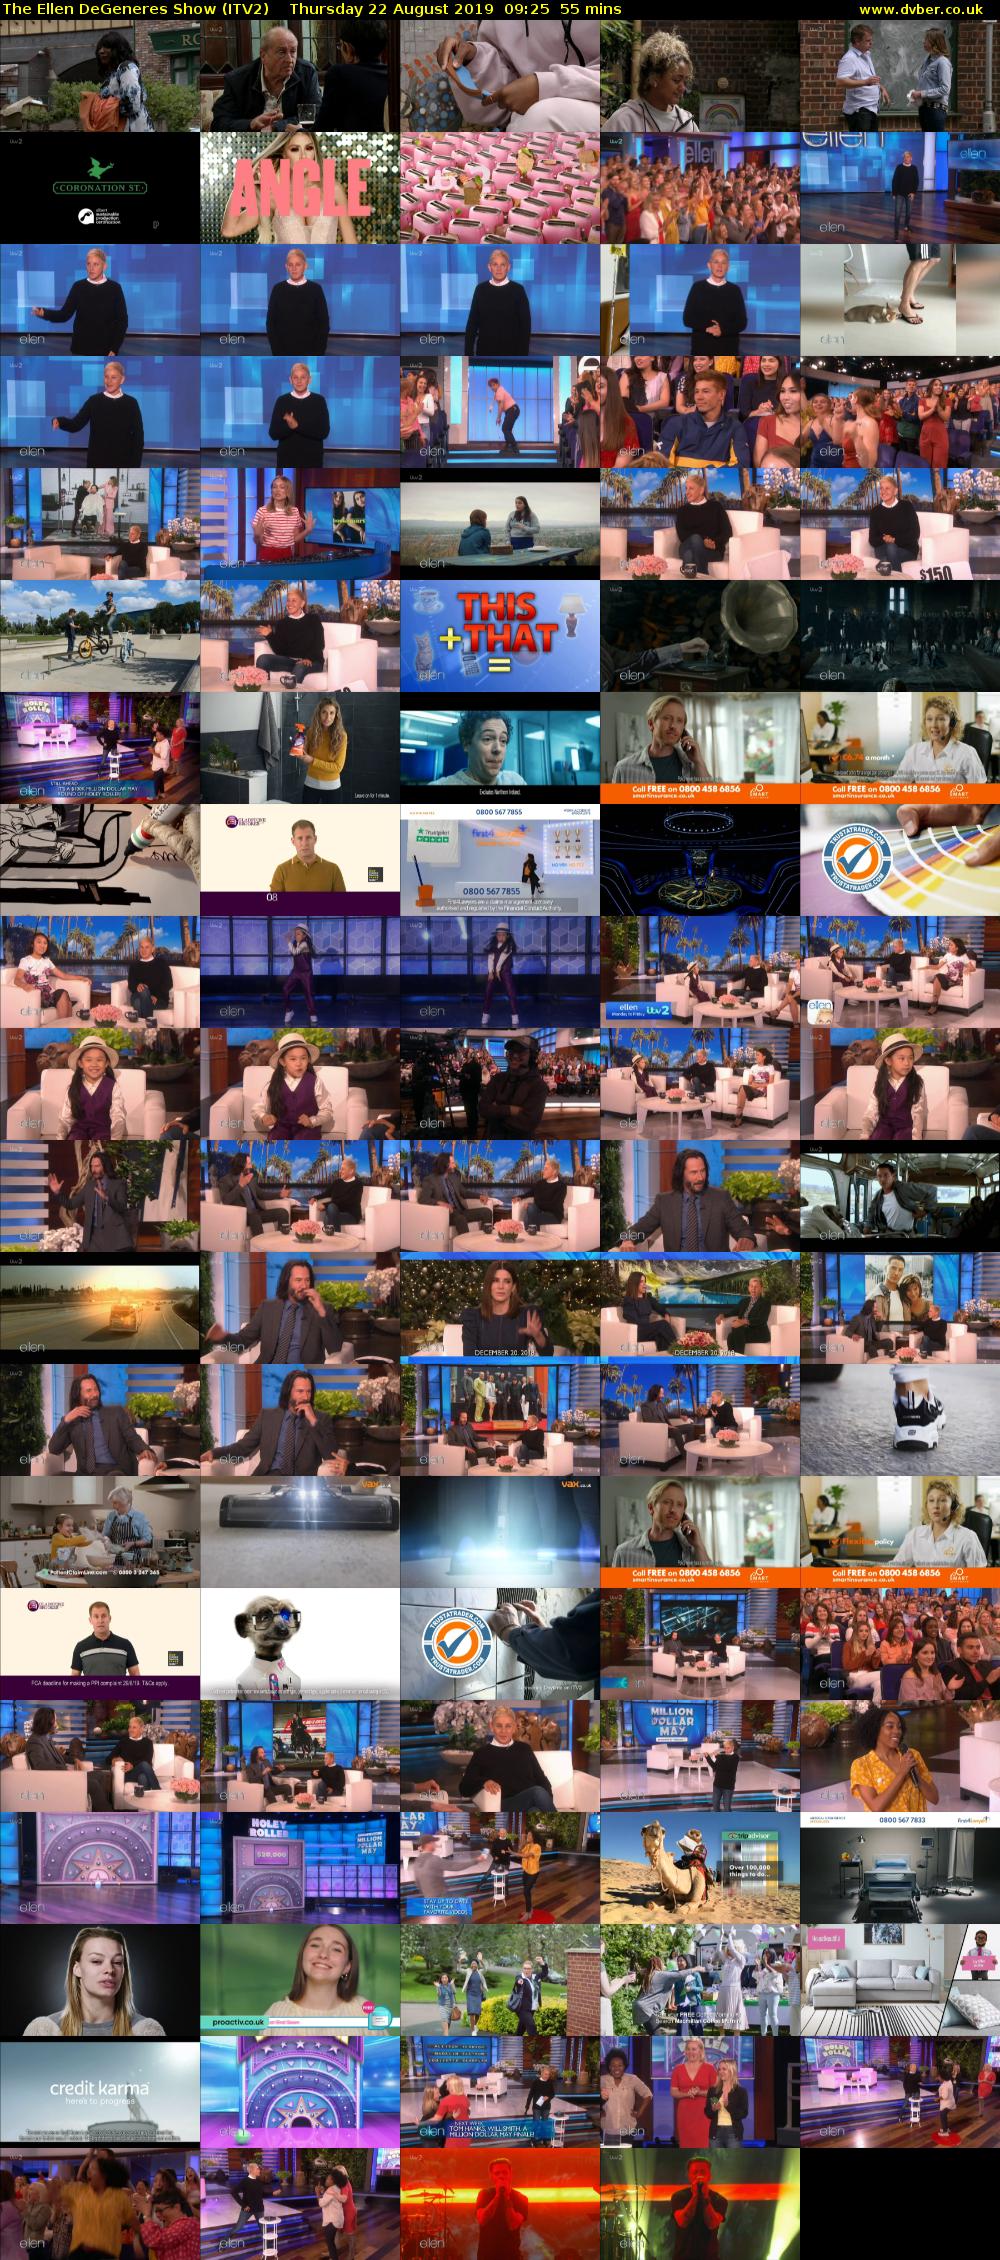 The Ellen DeGeneres Show (ITV2) Thursday 22 August 2019 09:25 - 10:20